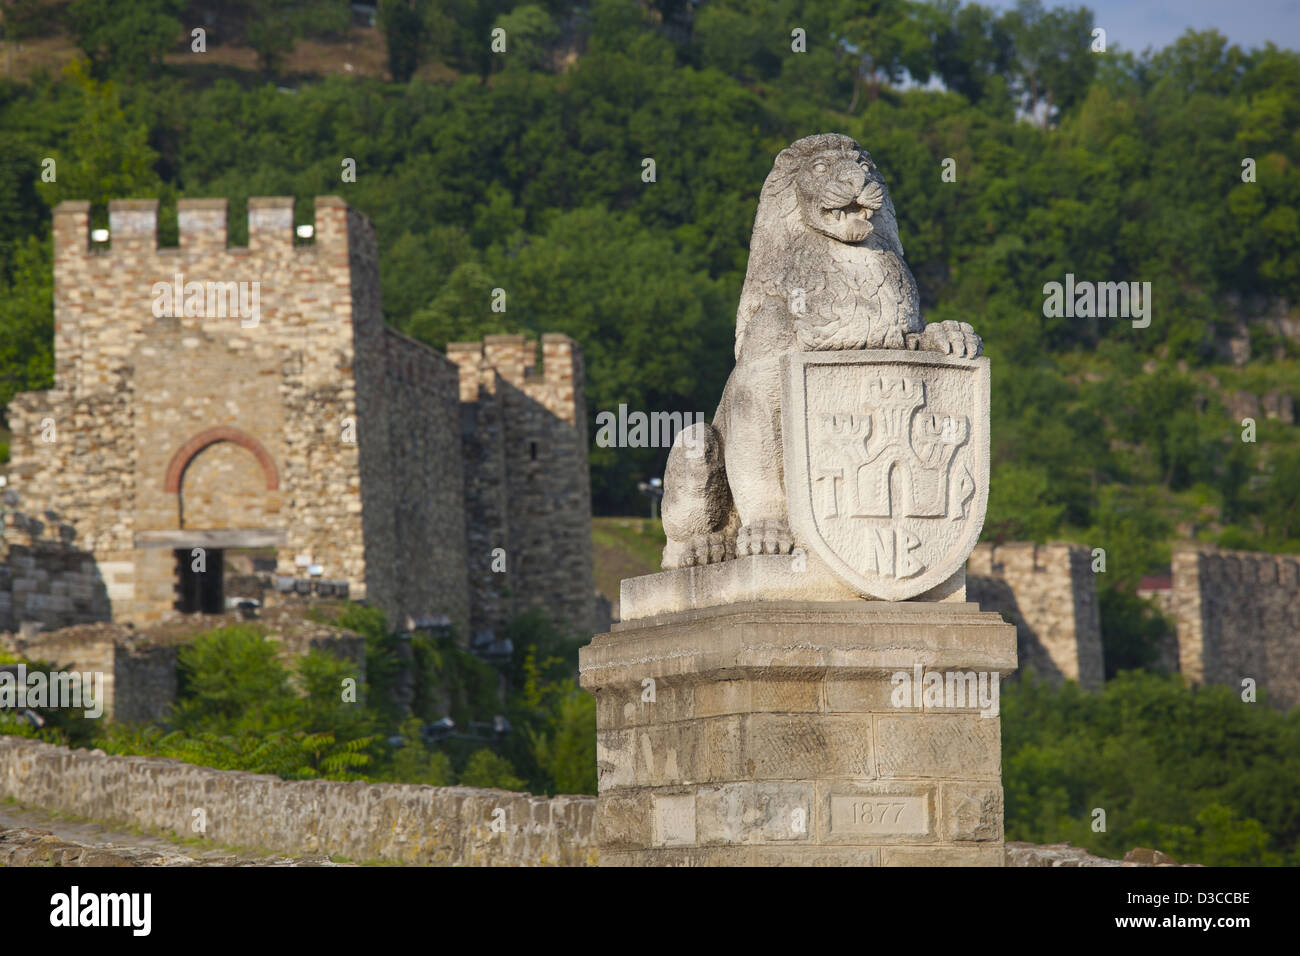 La Bulgarie, Europe, Veliko Tarnovo, la forteresse de tsarevets, porte principale, Guardian Statue Lion Holding Crest, symbole de l'État Banque D'Images